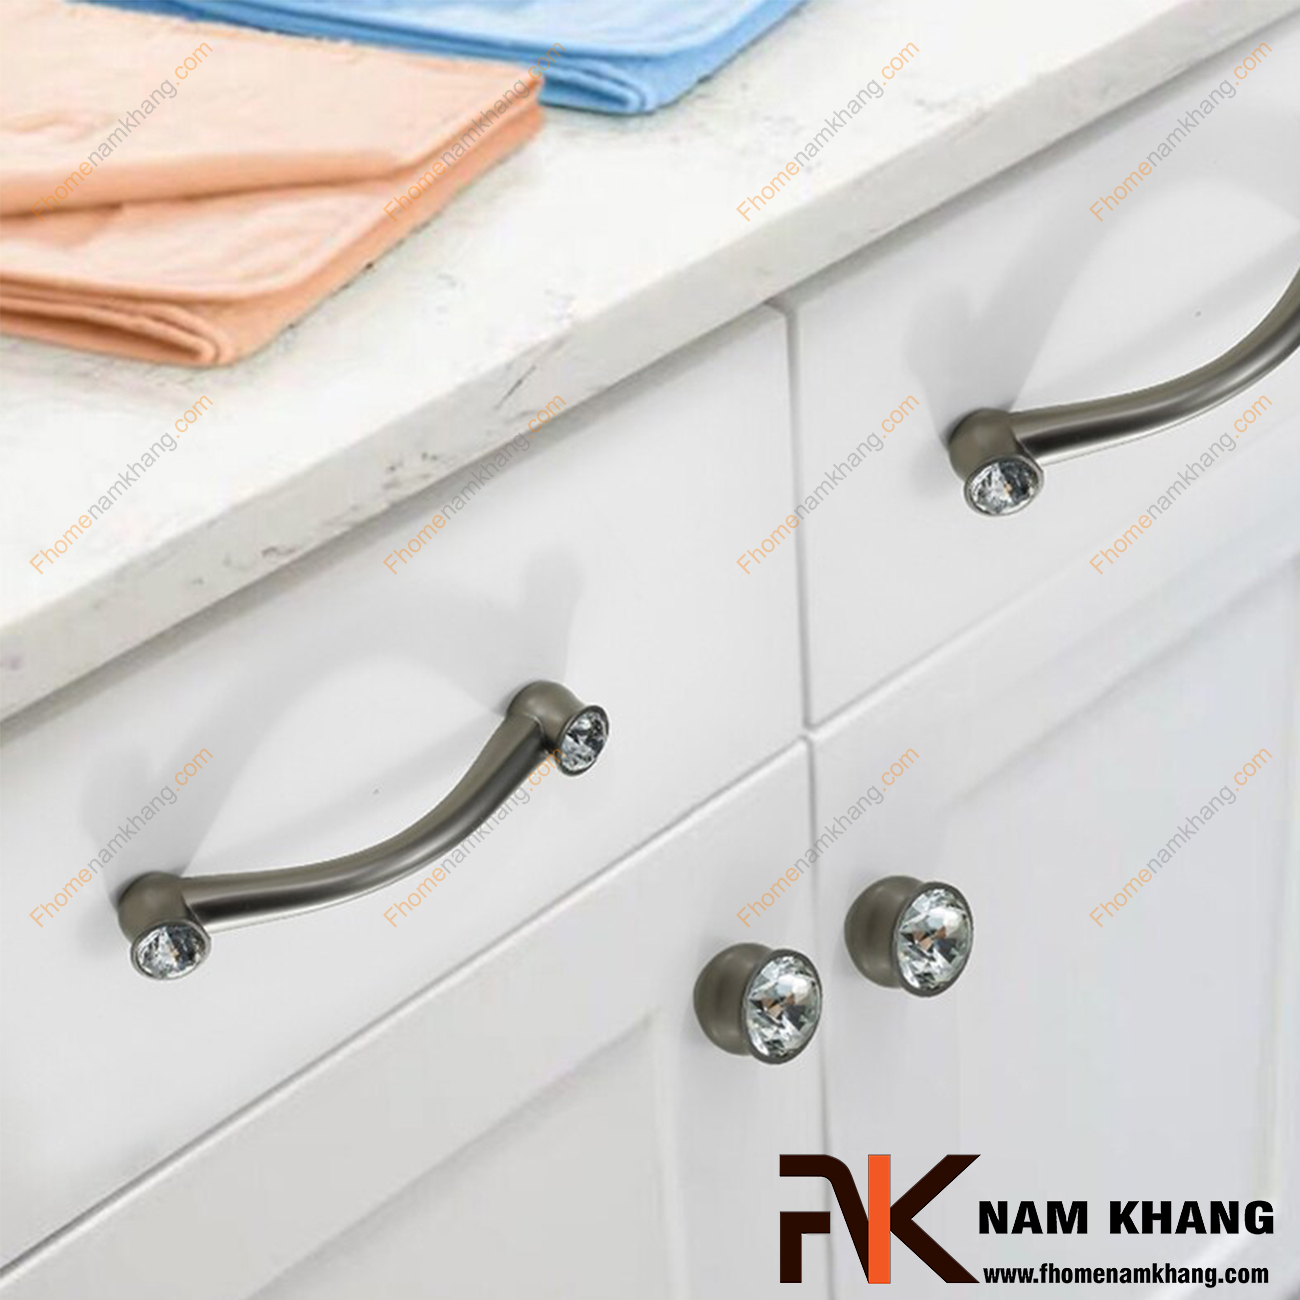 Tay nắm tủ kết hợp đá pha lê NK439-XBD đa dạng ở các vị trí lắp đặt bao gồm cả nội thất, ngoại thất, tủ kệ, tủ quần áo, tủ thời trang, tủ trang sức, ngăn kéo, ngăn bàn làm việc, tủ bếp,...